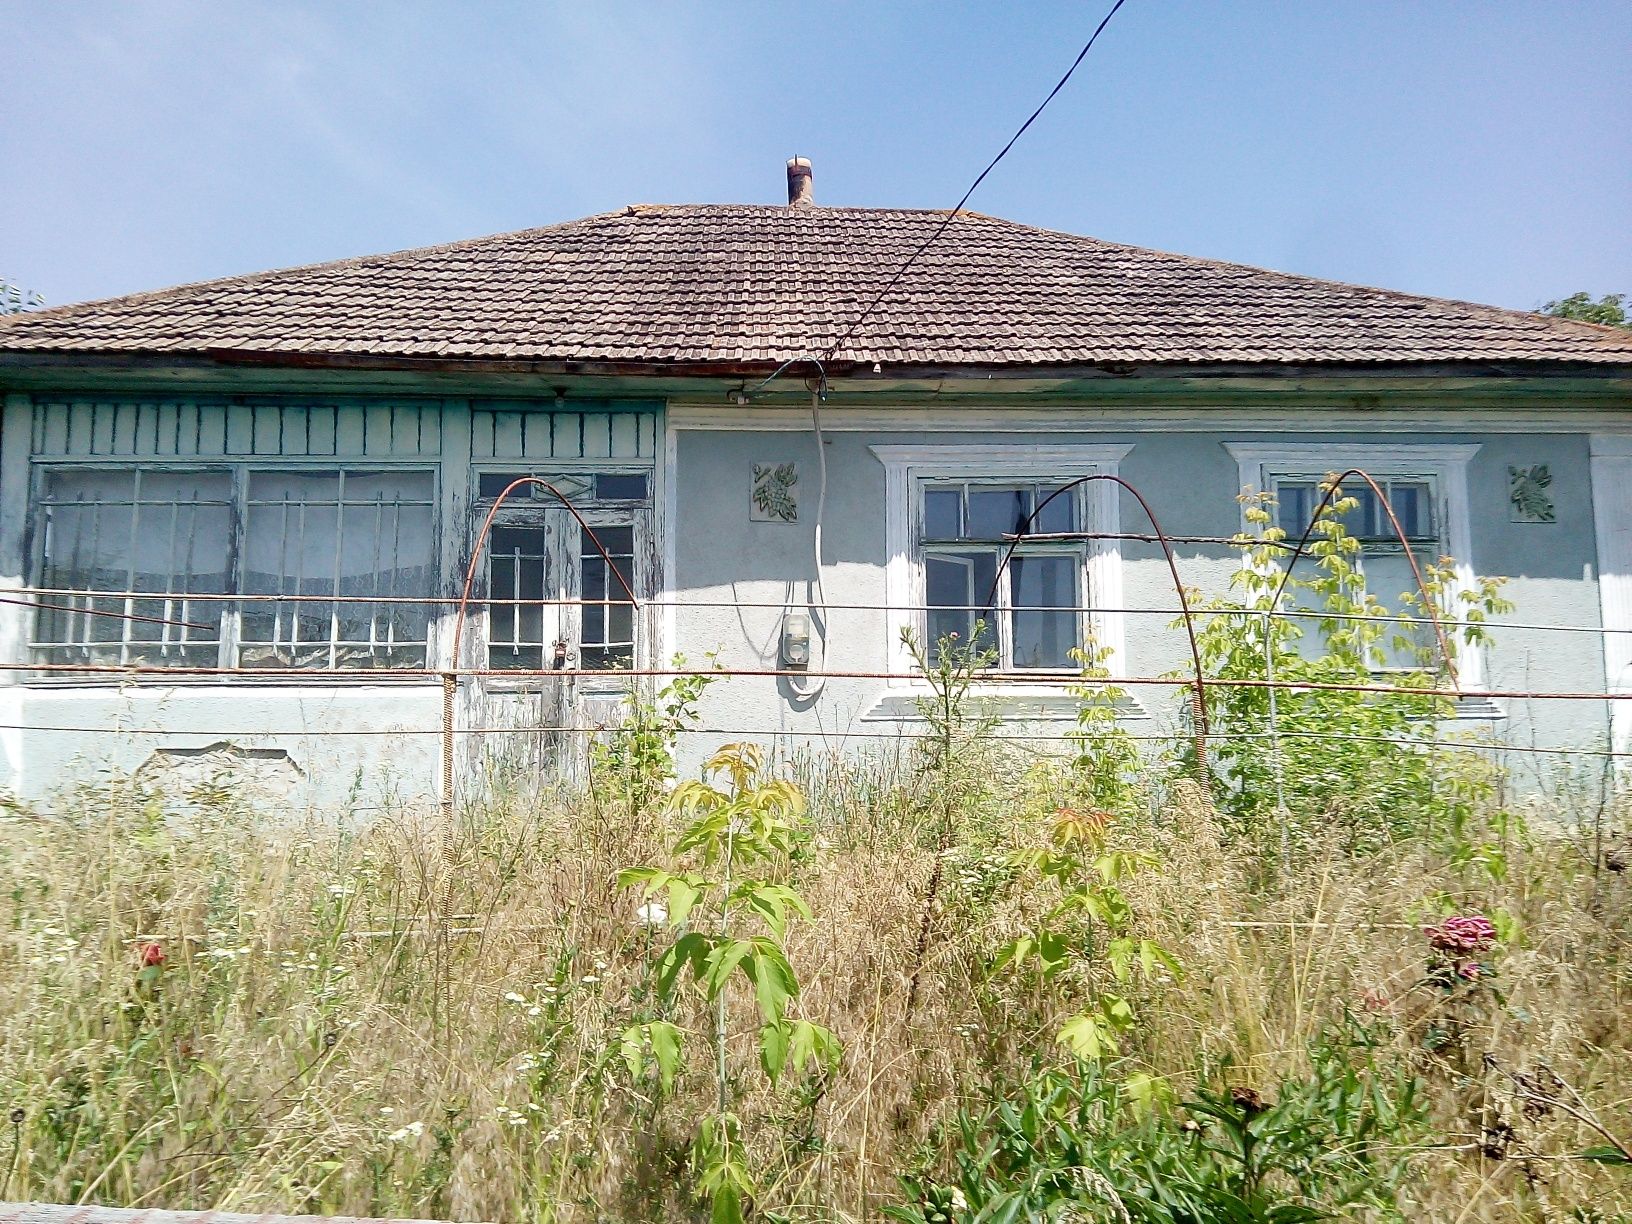 Продам будинок в селі Ожево,Чернівецької обл.Сокирянський р-н.